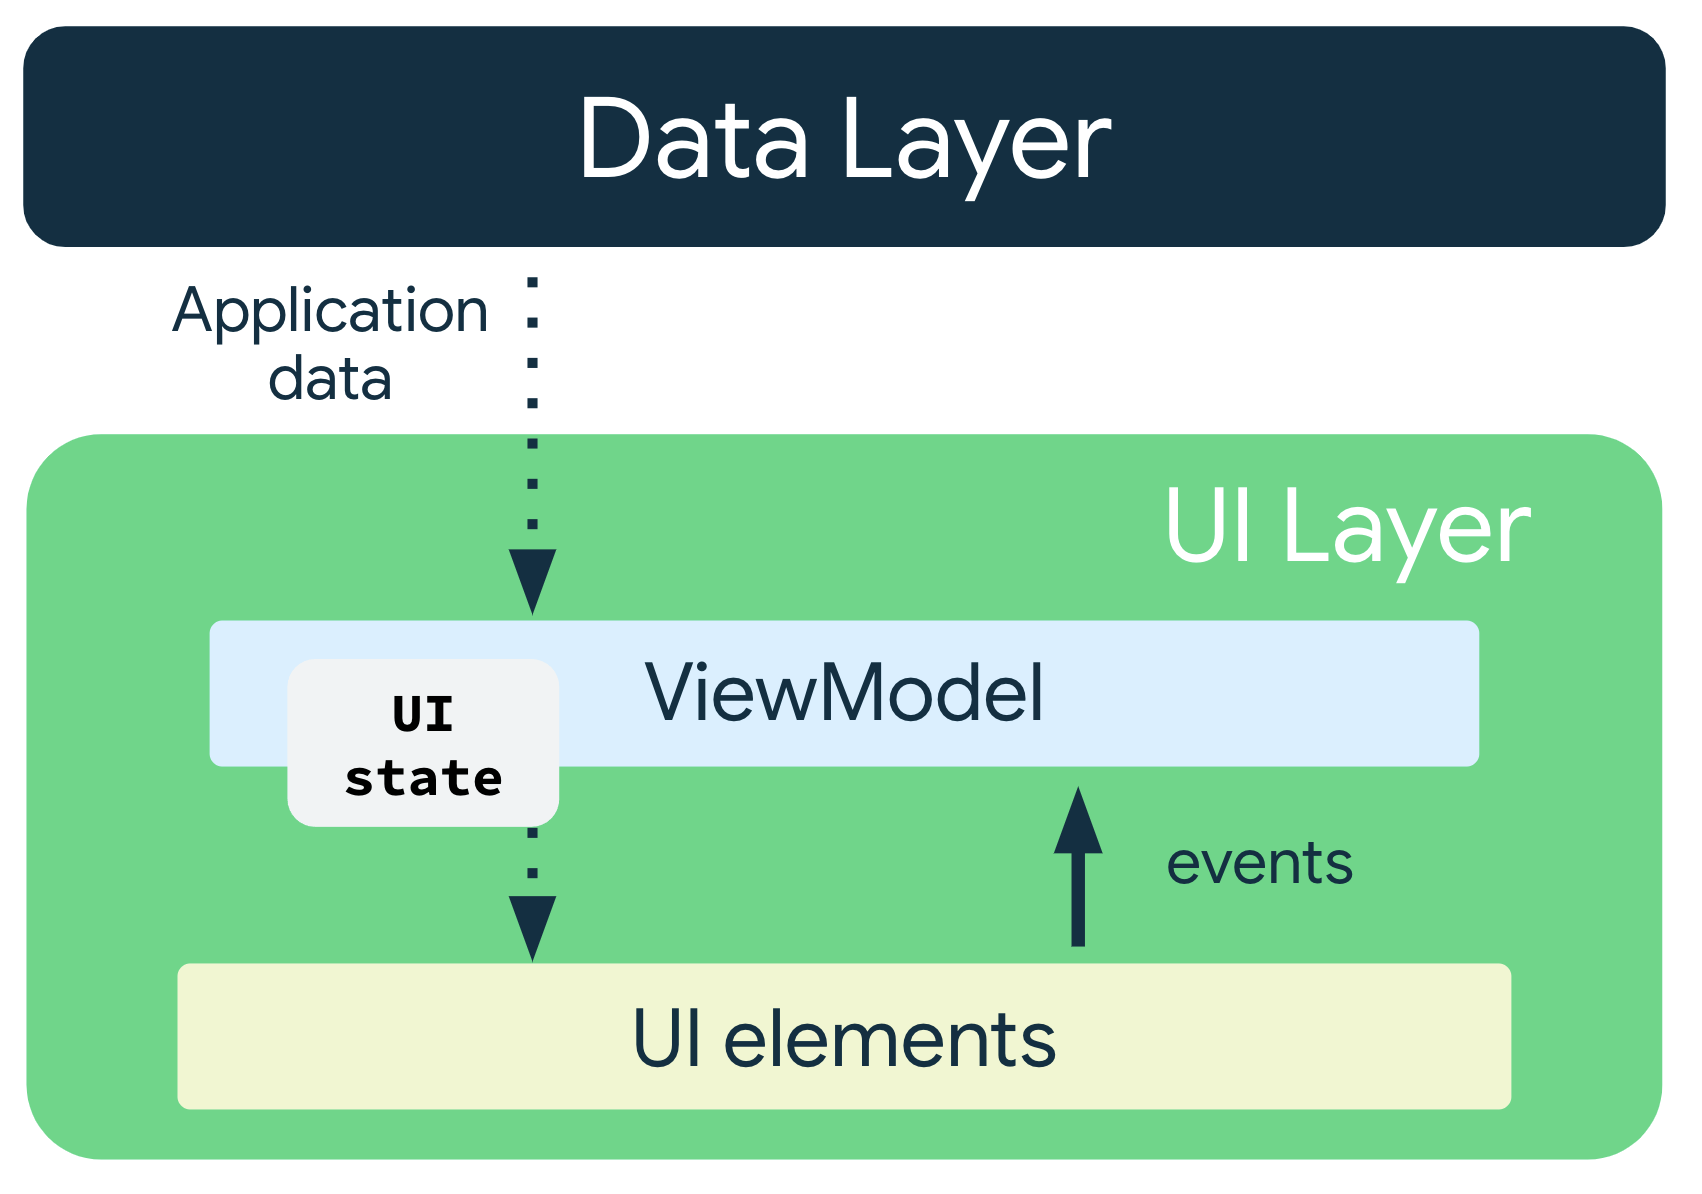 應用程式資料從資料層傳送到 ViewModel。UI 狀態會從 ViewModel 傳送至 UI 元素，而事件則從 UI 元素傳回 ViewModel。